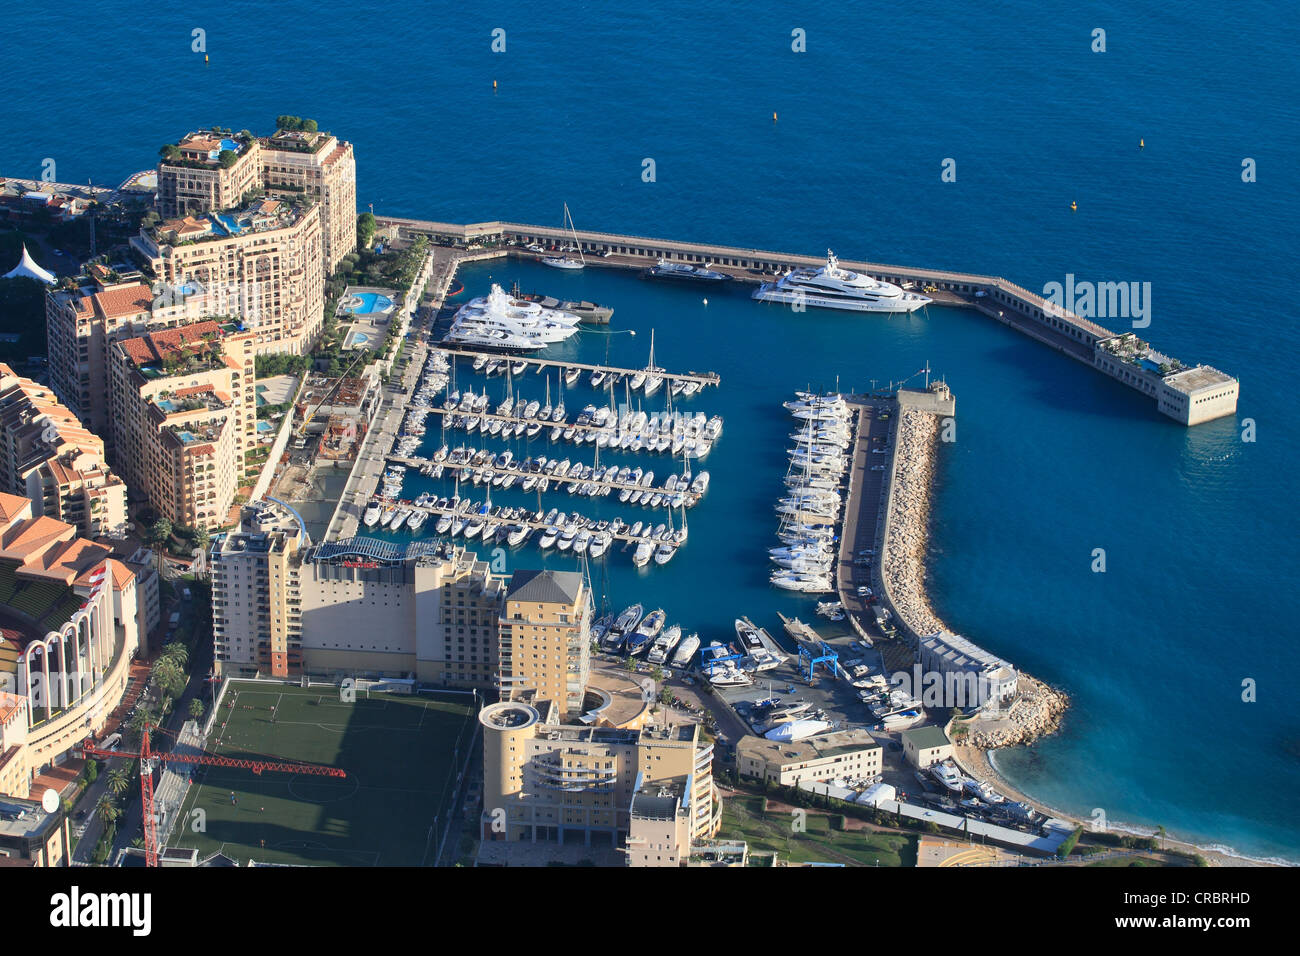 Marina of Cap d'Ail, adjacent to the Fontvieille quarter, Monaco, Département Alpes-Maritimes, Région Provence Alpes Côte d'Azur Stock Photo